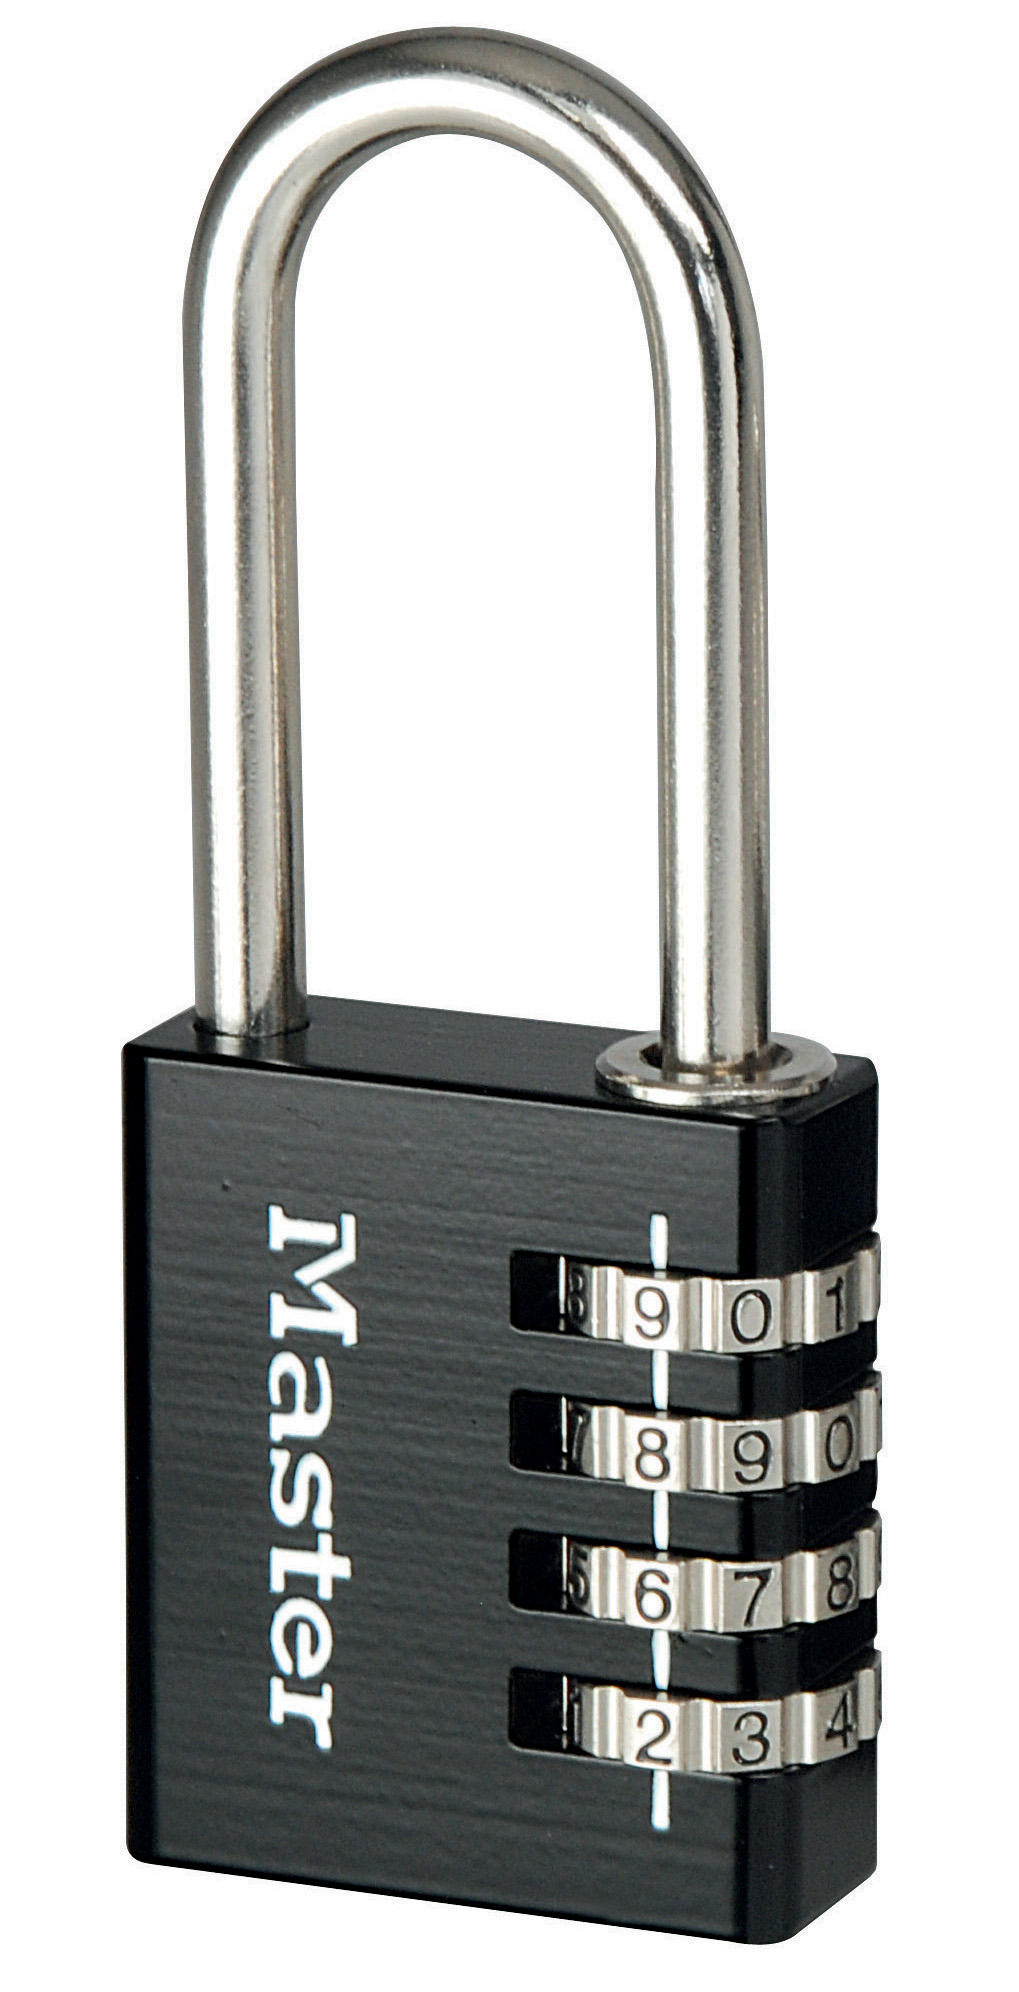 Masterlock 7640EURD Aluminium 40mm 4 Digit Combination Padlock 